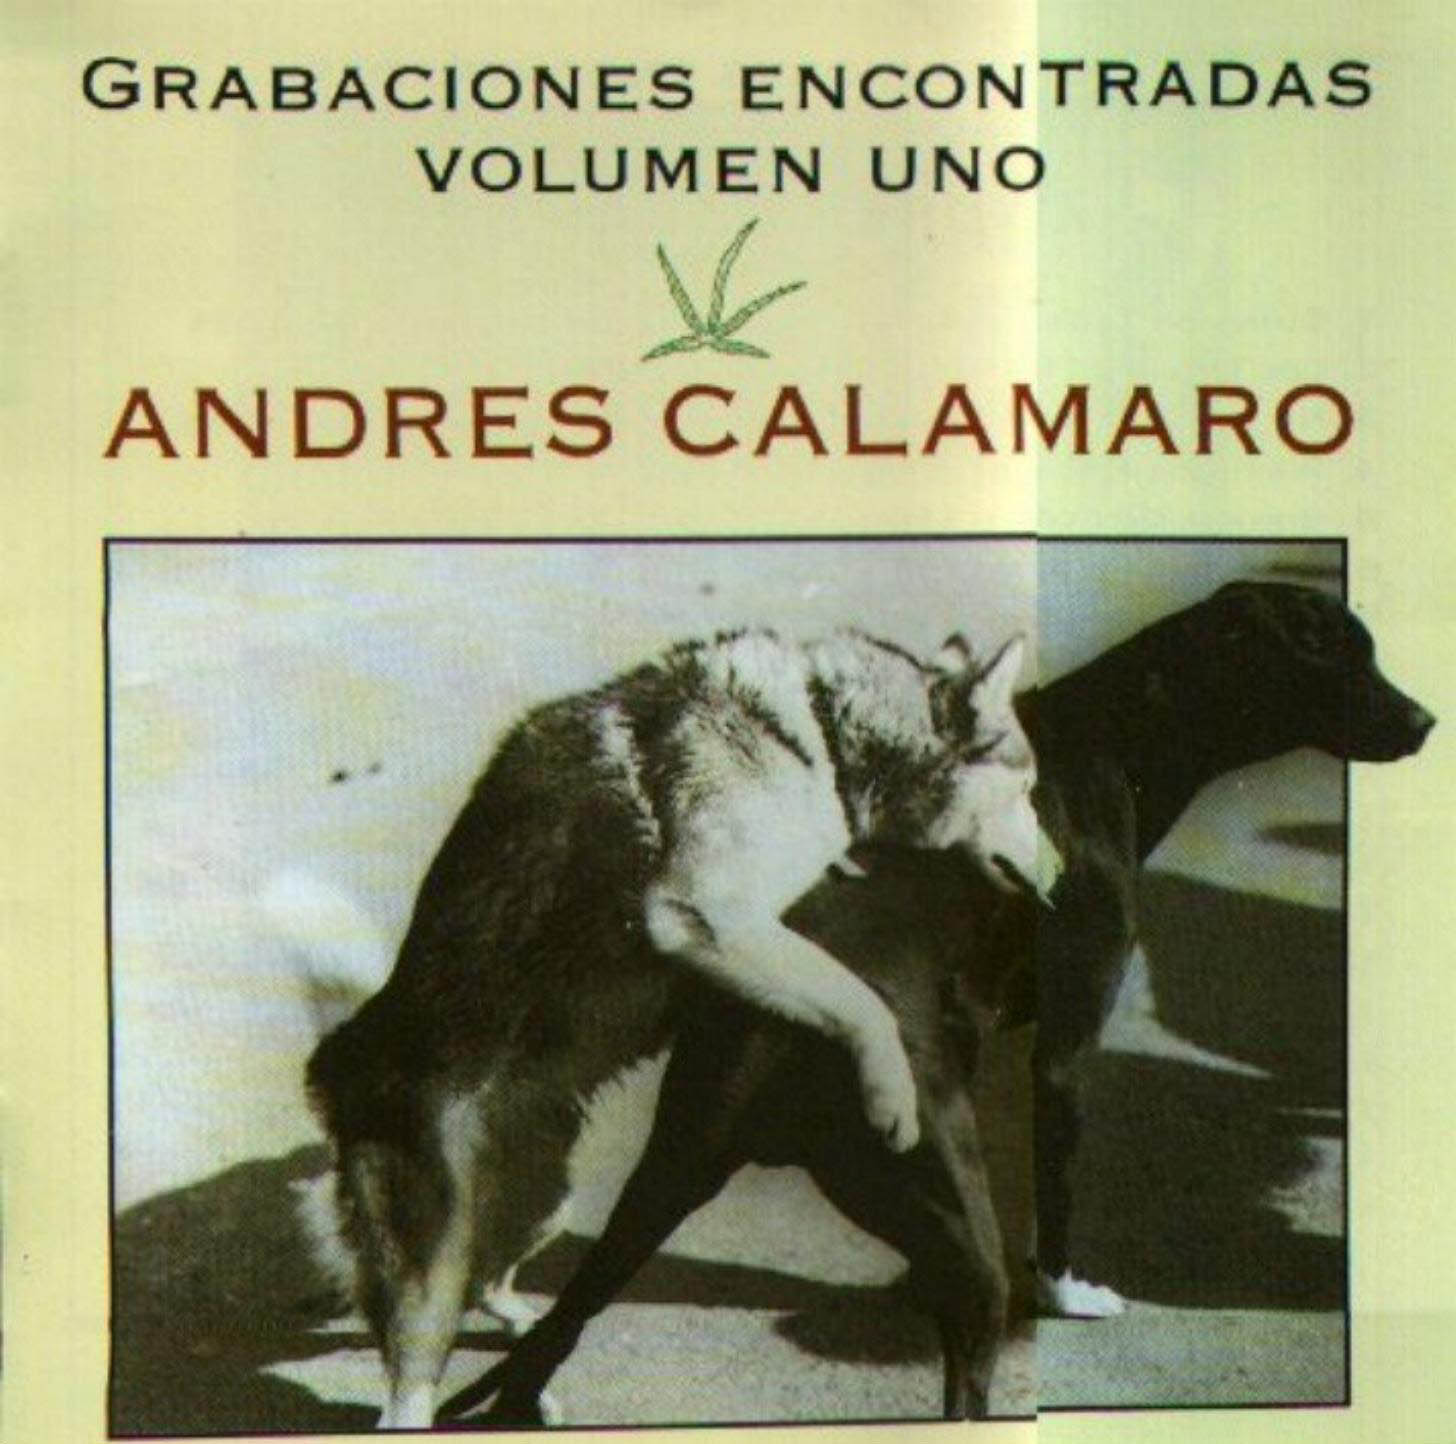 Cartula Frontal de Andres Calamaro - Grabaciones Encontradas Volumen Uno